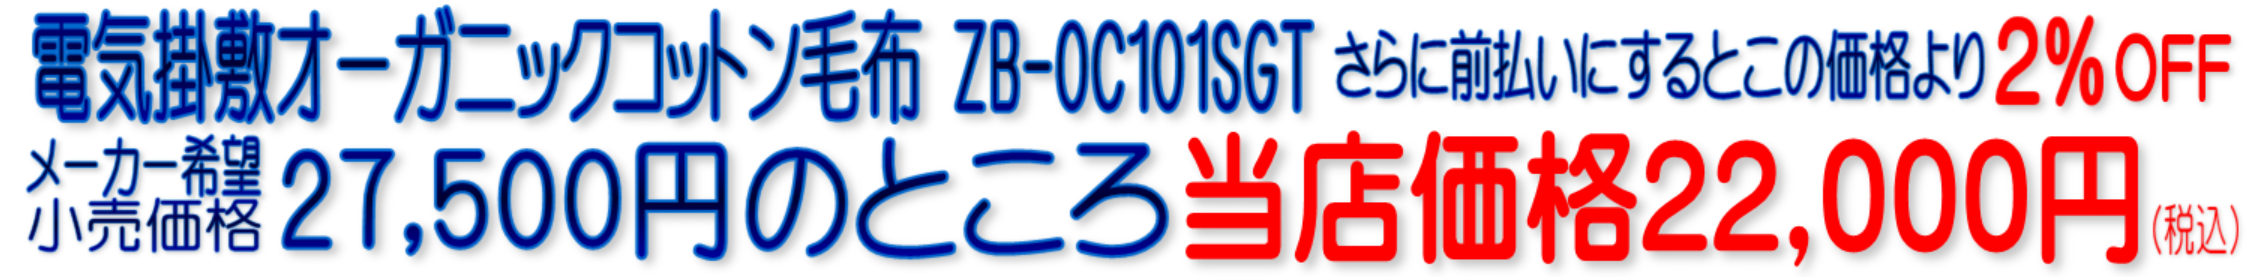 ZB-OC101SG